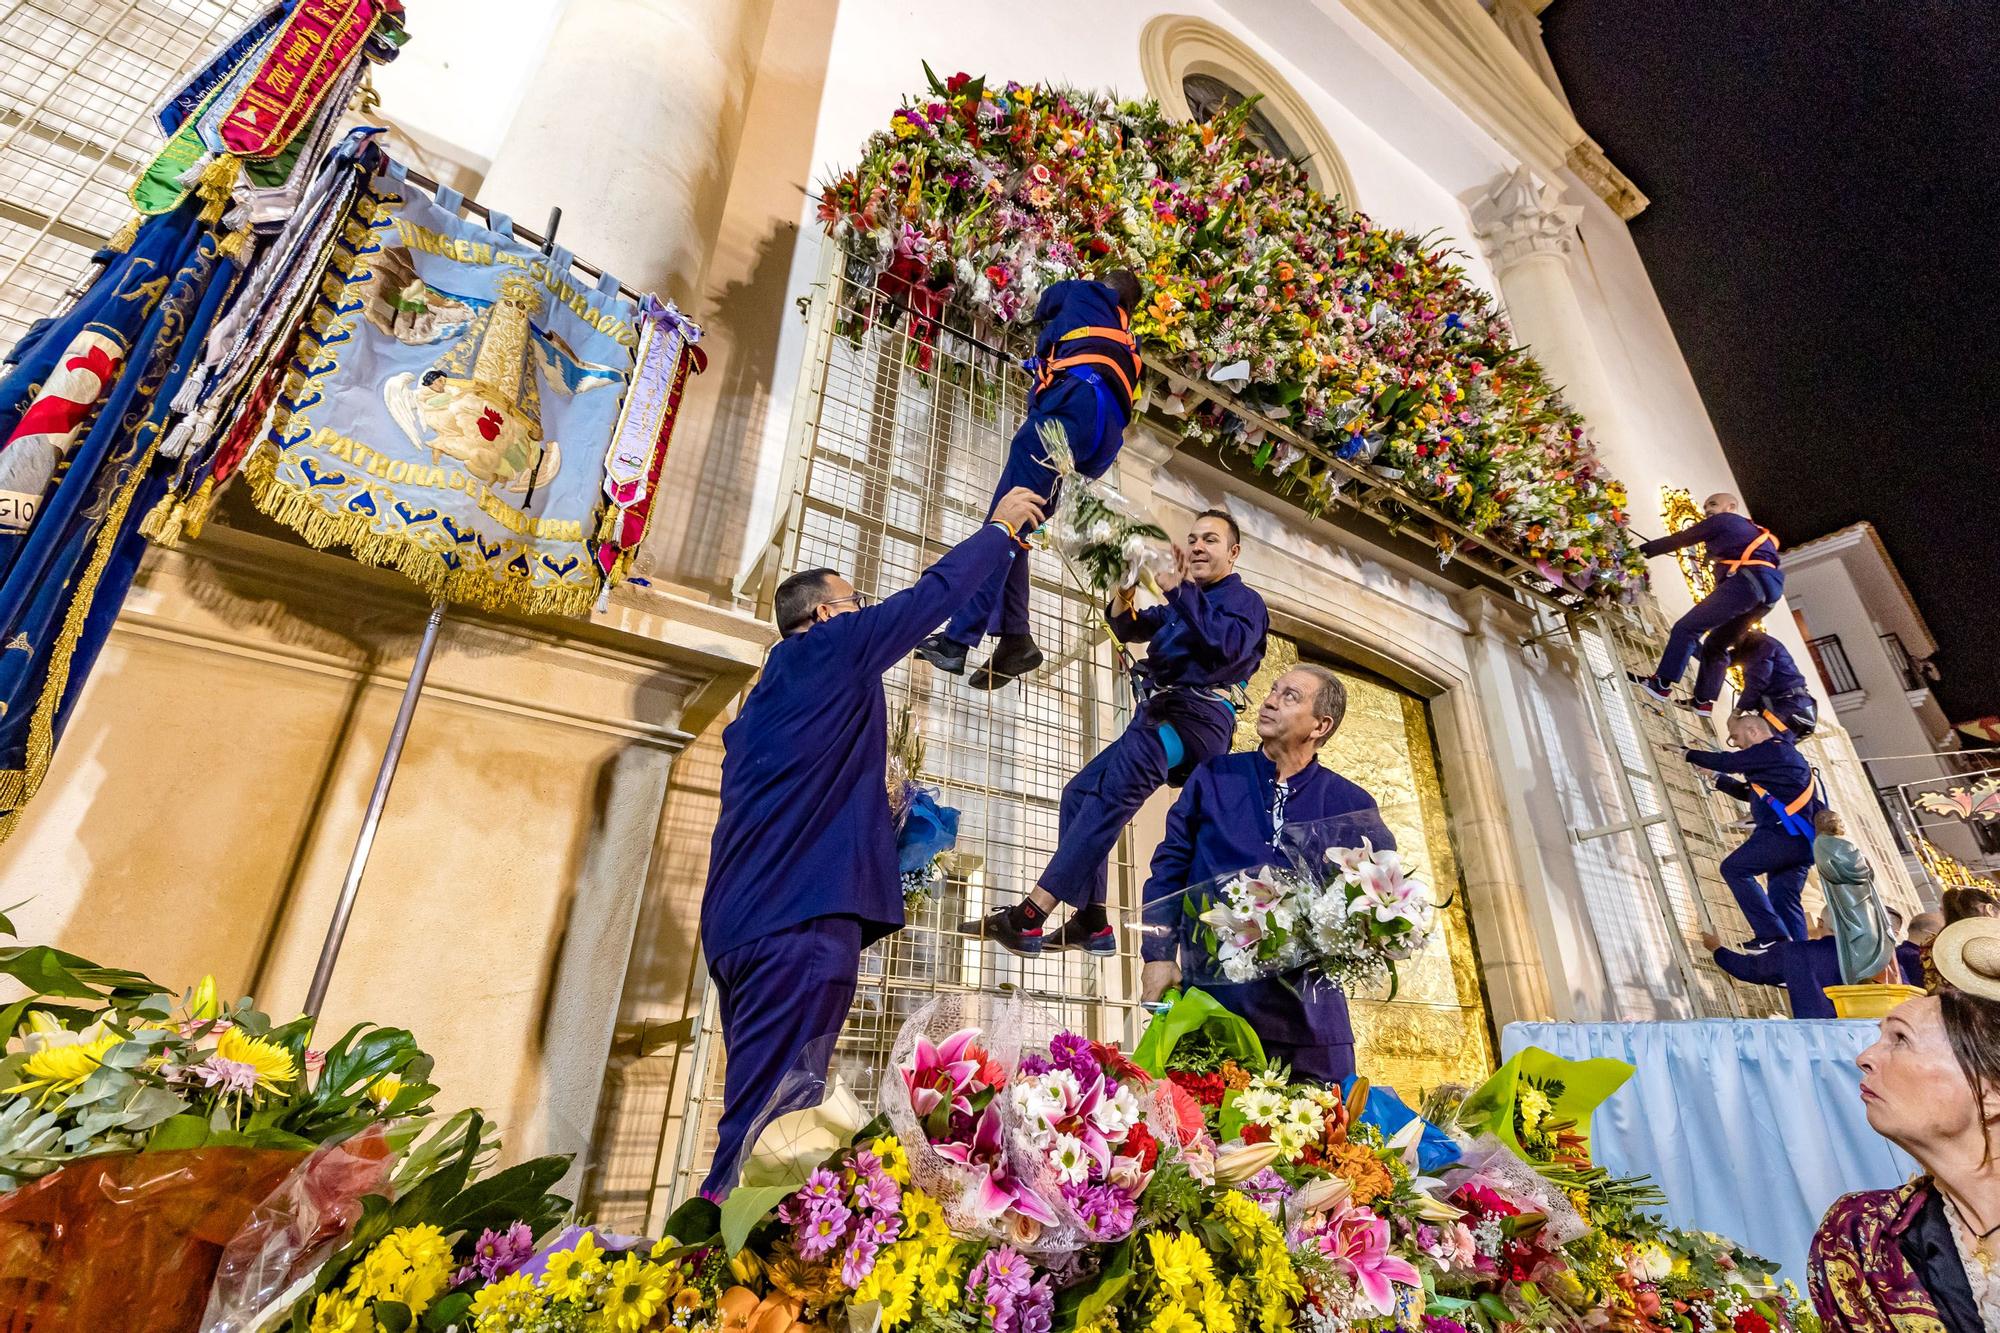 Representación del Hallazgo de la Virgen del Sufragio y Ofrenda de flores en Benidorm